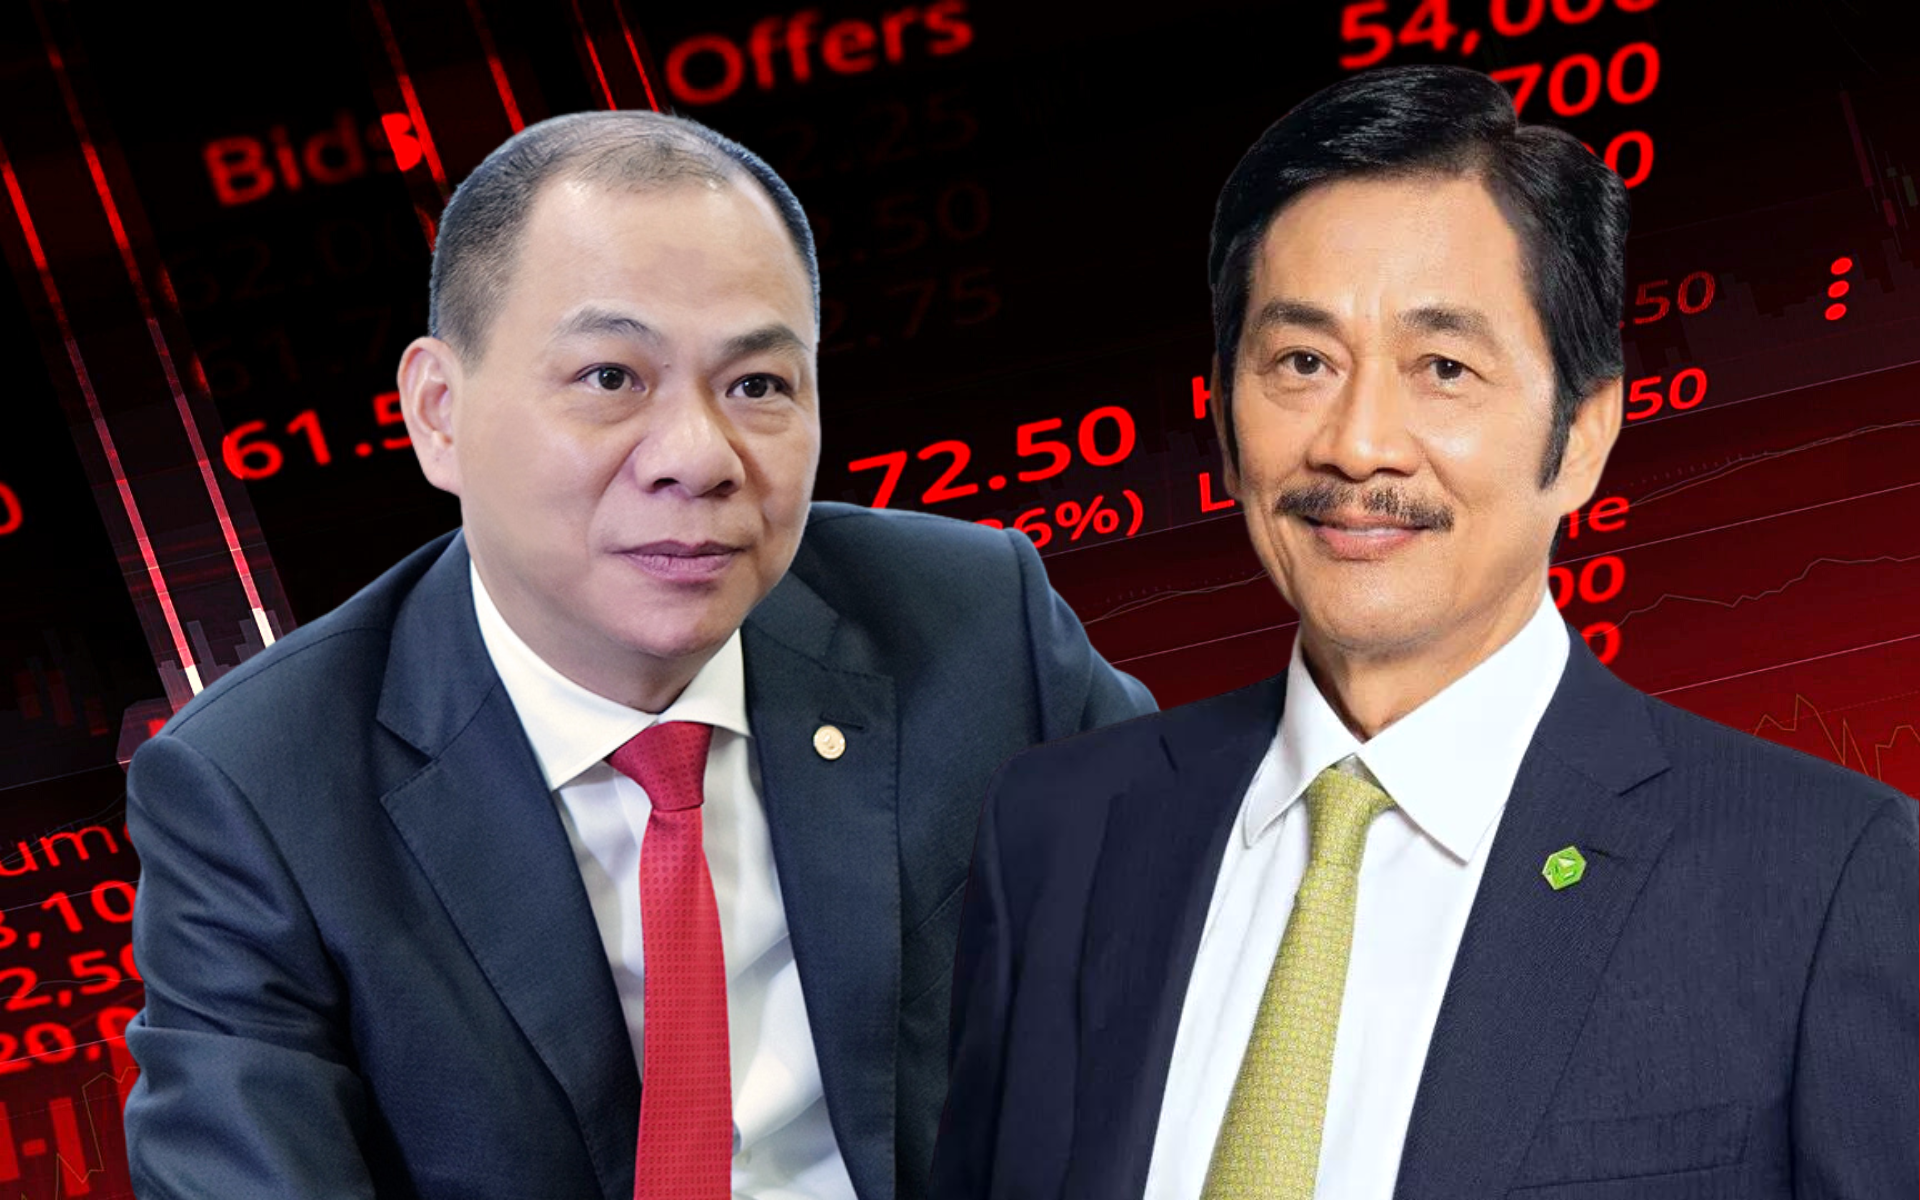 Top người giàu tuần đầu tháng: Vỏn vẹn 3 người không bị "mất tiền", ông Bùi Thành Nhơn "kiếm" nhiều nhất, CEO VNG gia nhập nhóm sở hữu tài sản nghìn tỷ